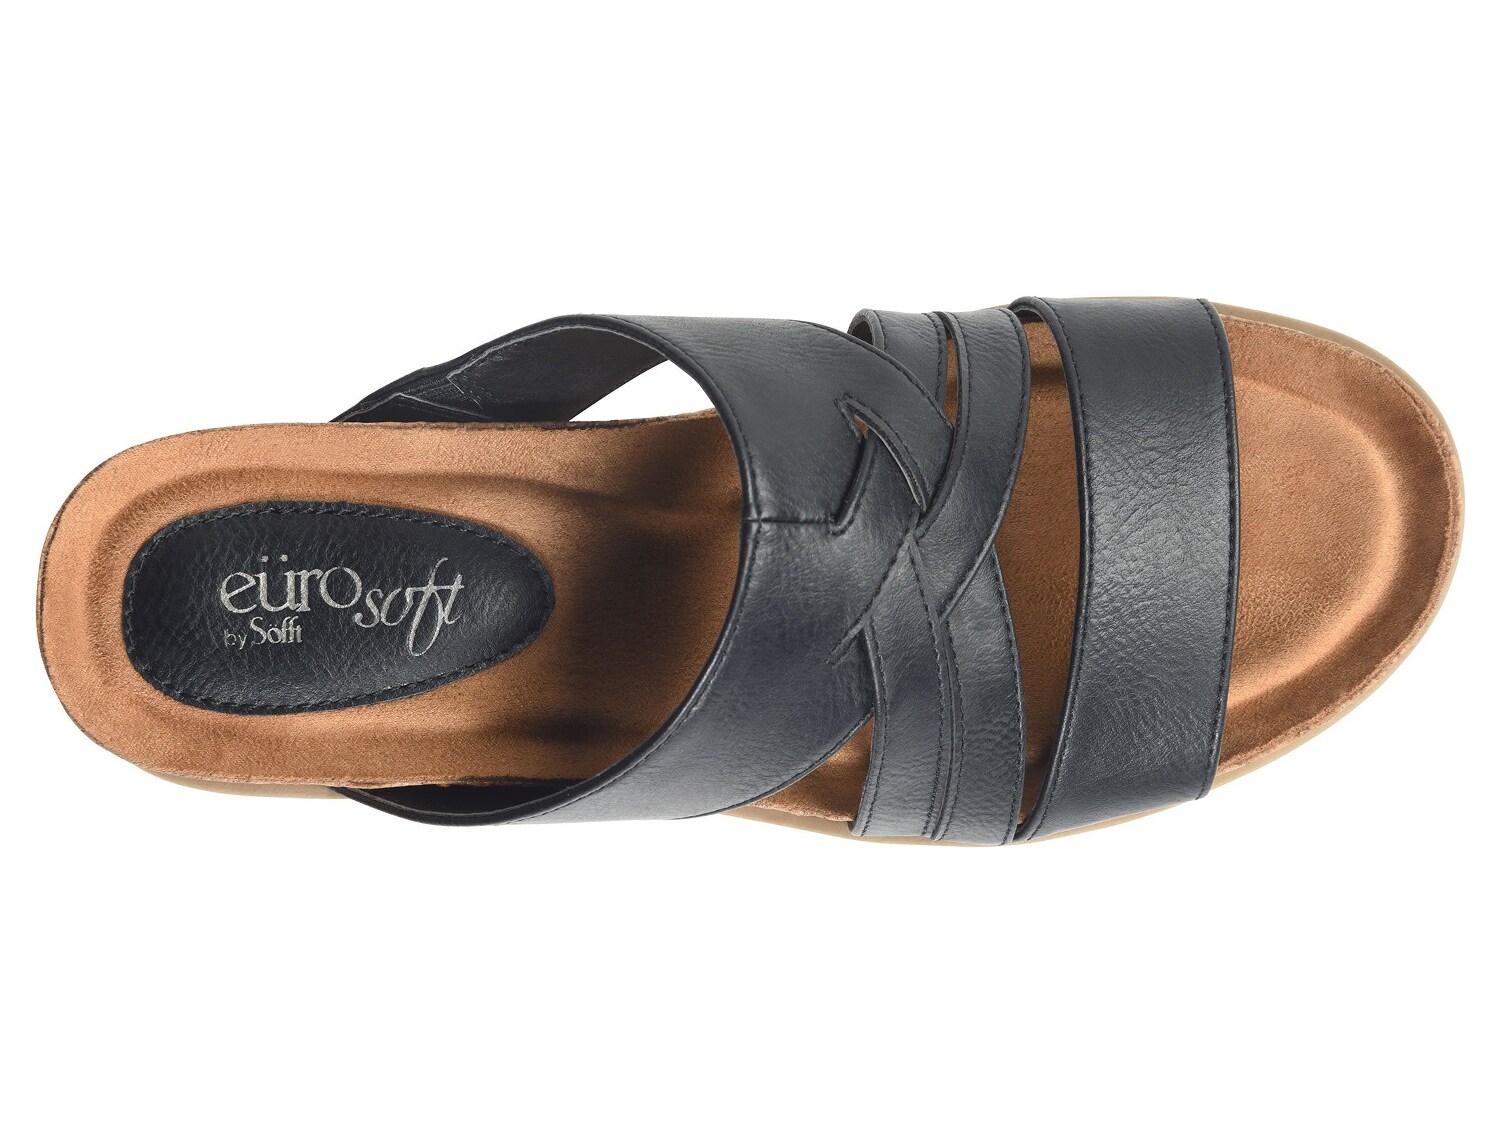 eurosoft lisanda wedge sandal